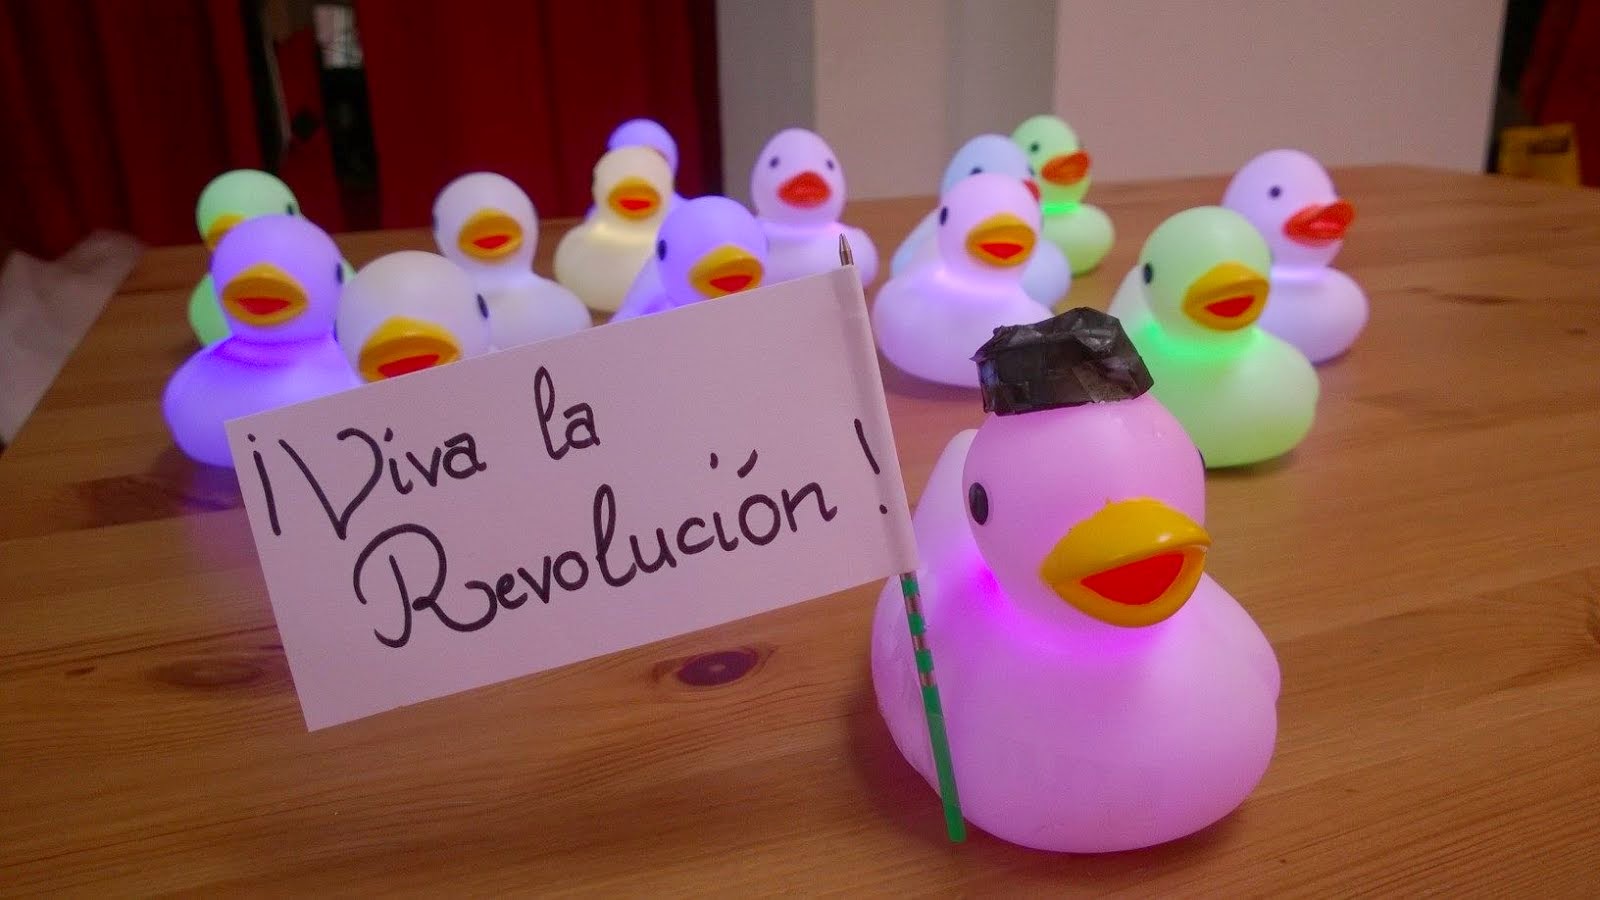 iViva la Revolución!